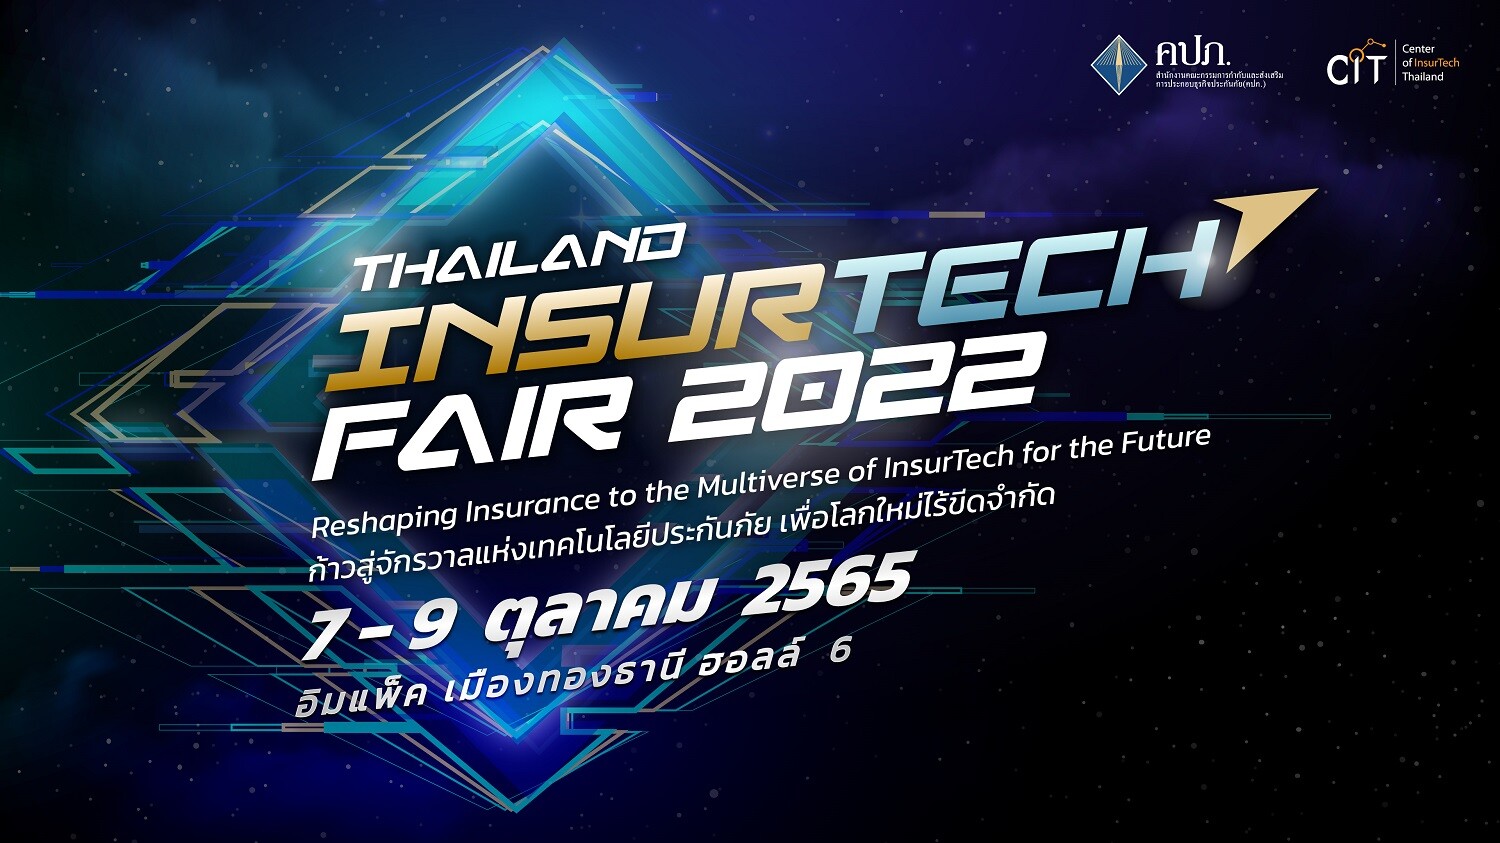 คปภ.แถลงข่าวความพร้อมการจัดงาน "Thailand InsurTech Fair 2022" งานอีเวนท์ประกันภัยสุดยิ่งใหญ่ในรูปแบบ Hybrid  ที่จะพาทุกคนก้าวสู่จักรวาลเทคโนโลยีประกันภัย 7-9 ตุลาคม 2565